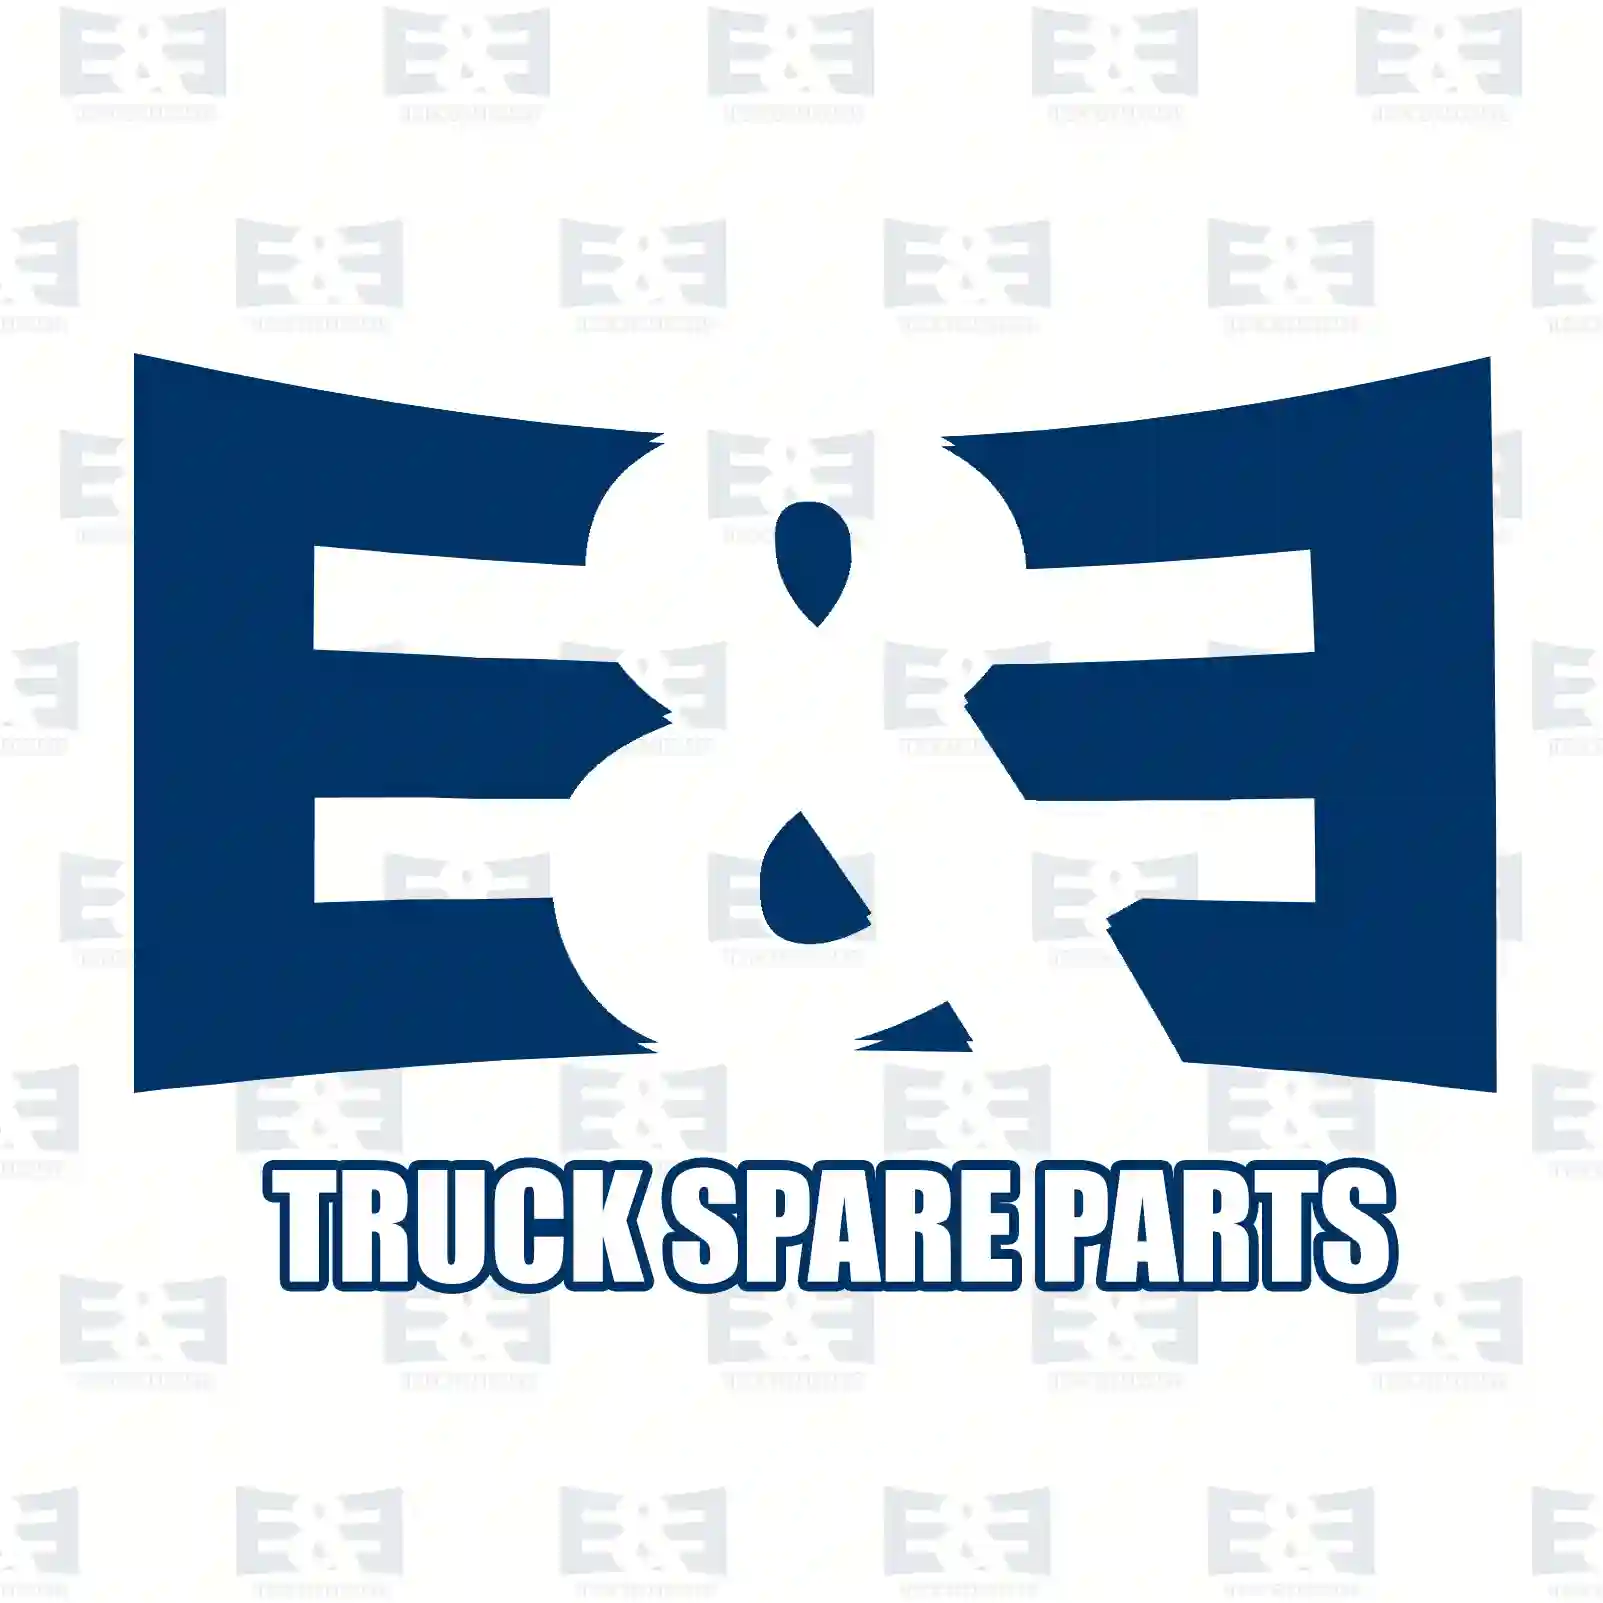 Oil cooler, retarder, 2E2277755, 5010437354, 50104 ||  2E2277755 E&E Truck Spare Parts | Truck Spare Parts, Auotomotive Spare Parts Oil cooler, retarder, 2E2277755, 5010437354, 50104 ||  2E2277755 E&E Truck Spare Parts | Truck Spare Parts, Auotomotive Spare Parts